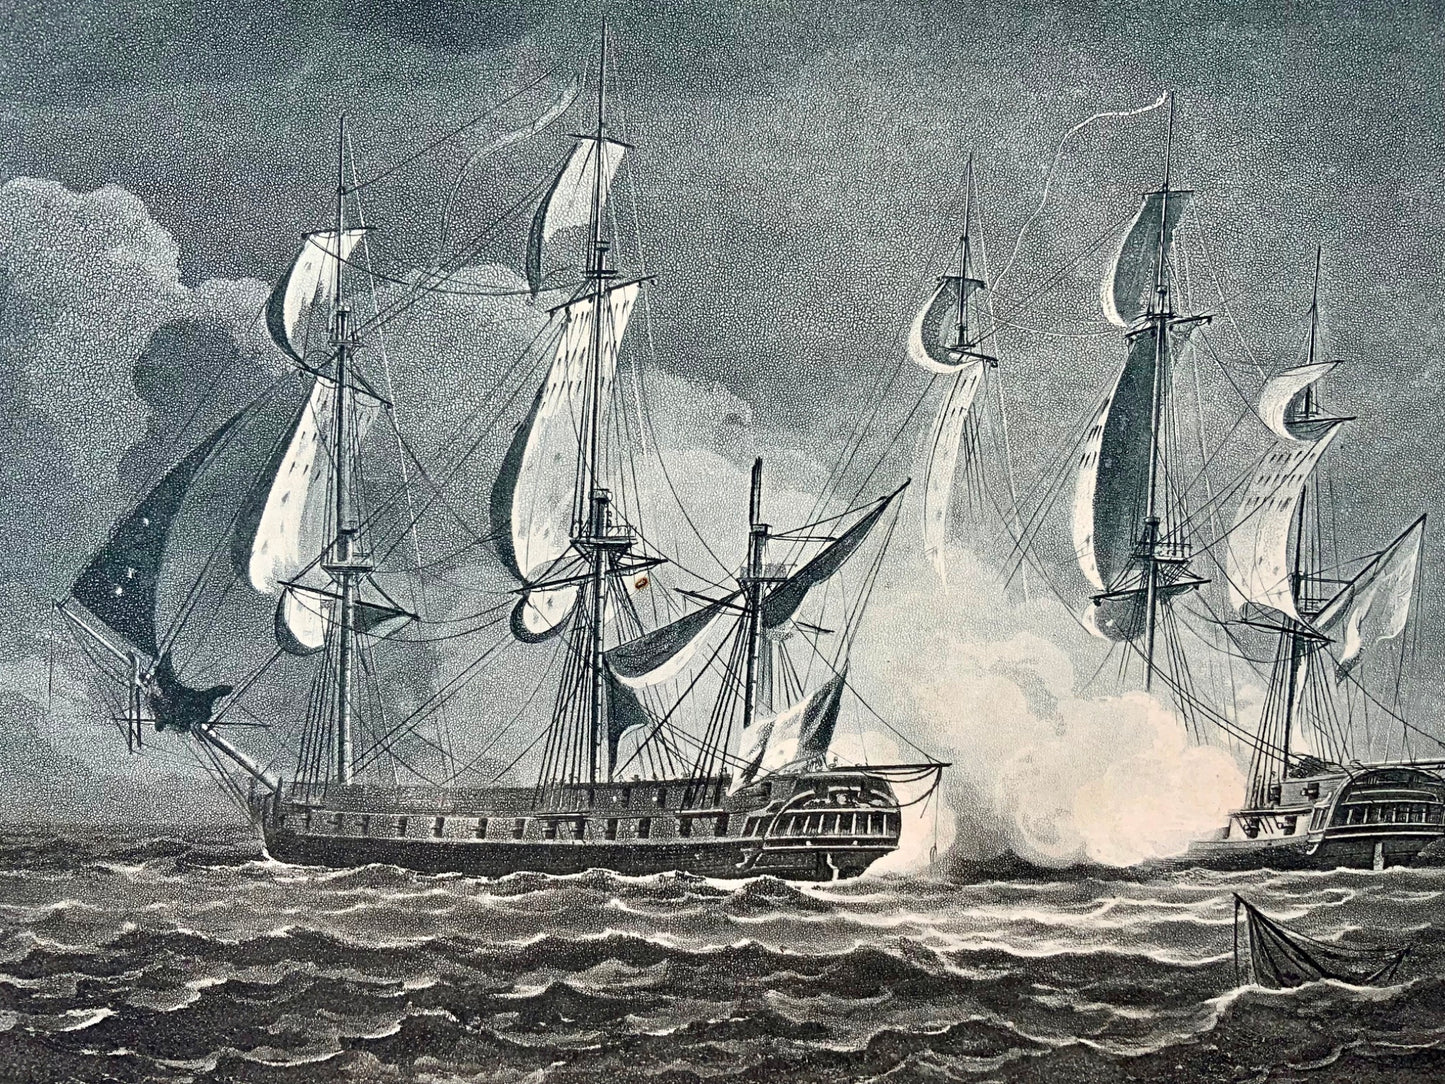 1820 Sutherland, Cattura di La Guerrière nel 1806, acquatinta marittima